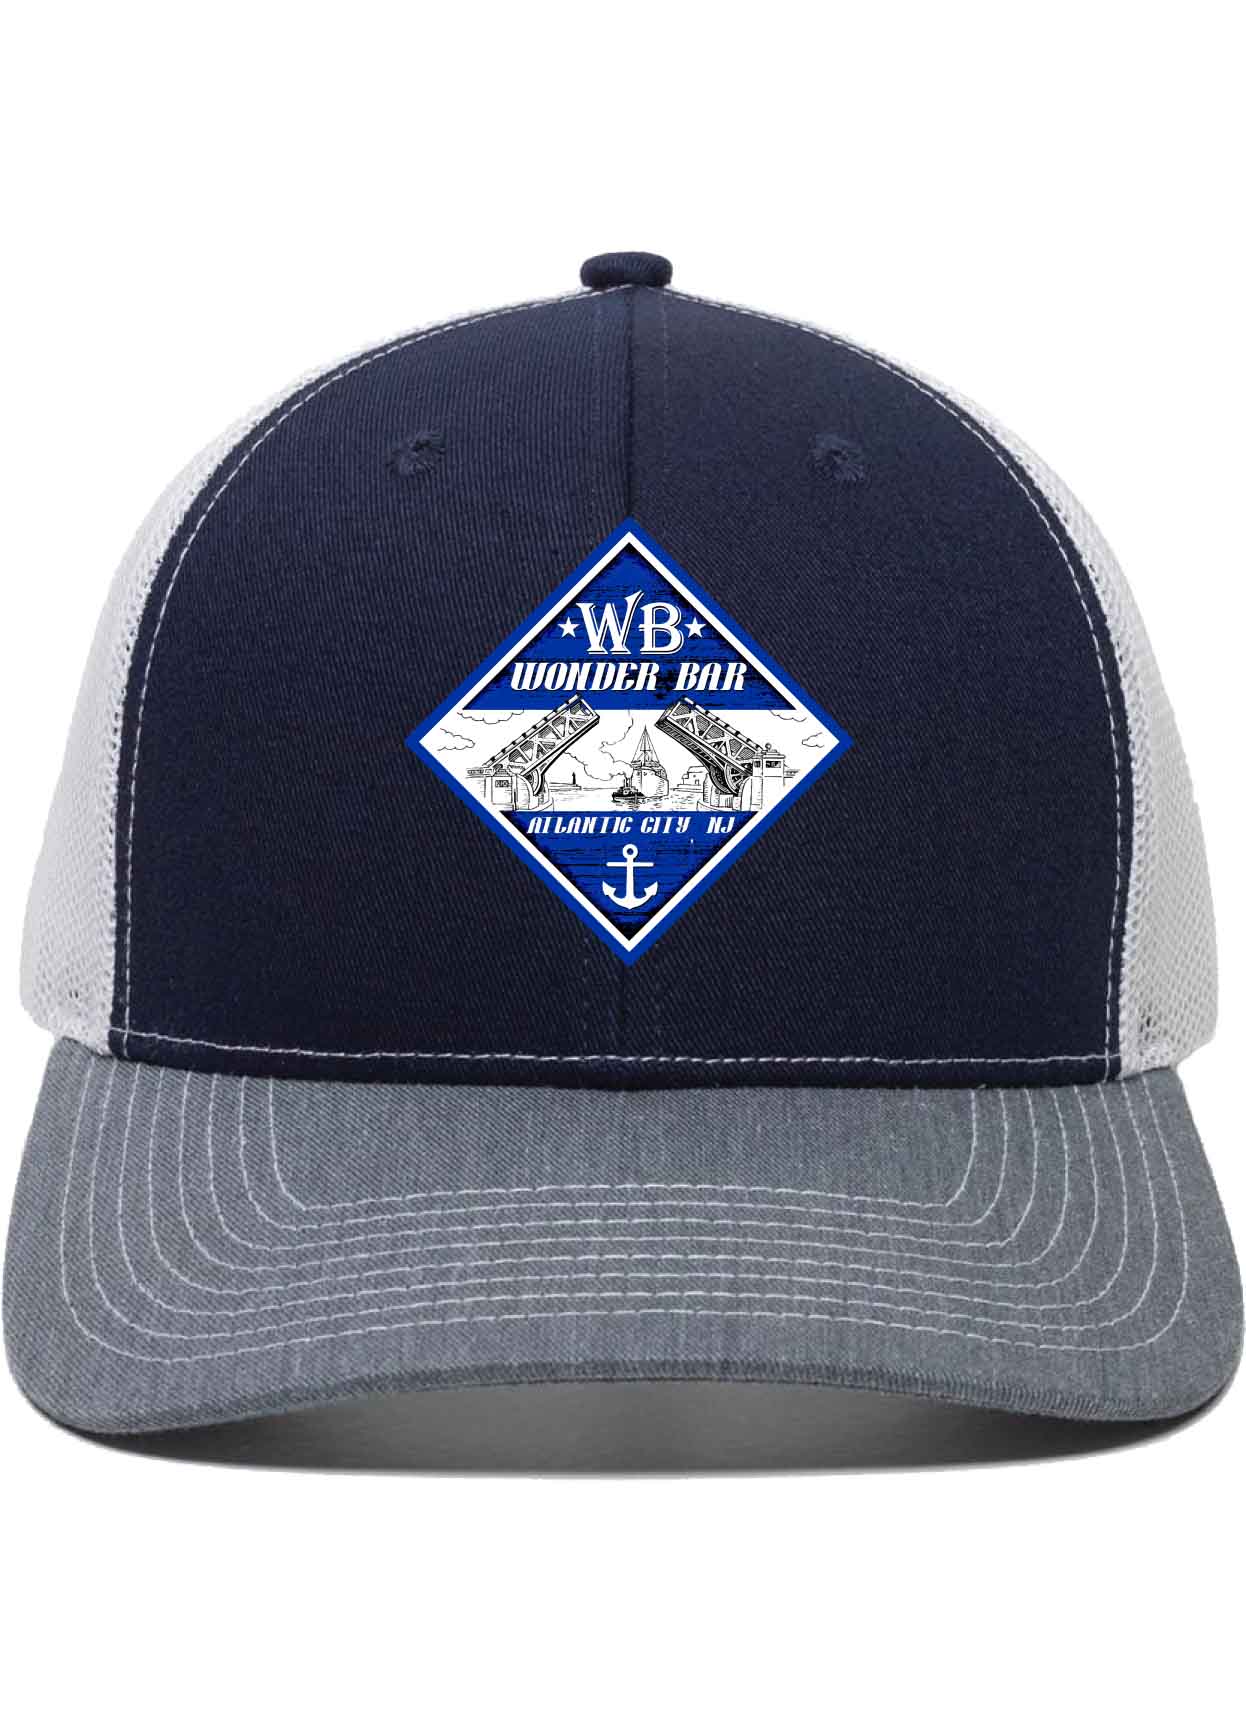 Wonder Bar Trucker Patch Hat